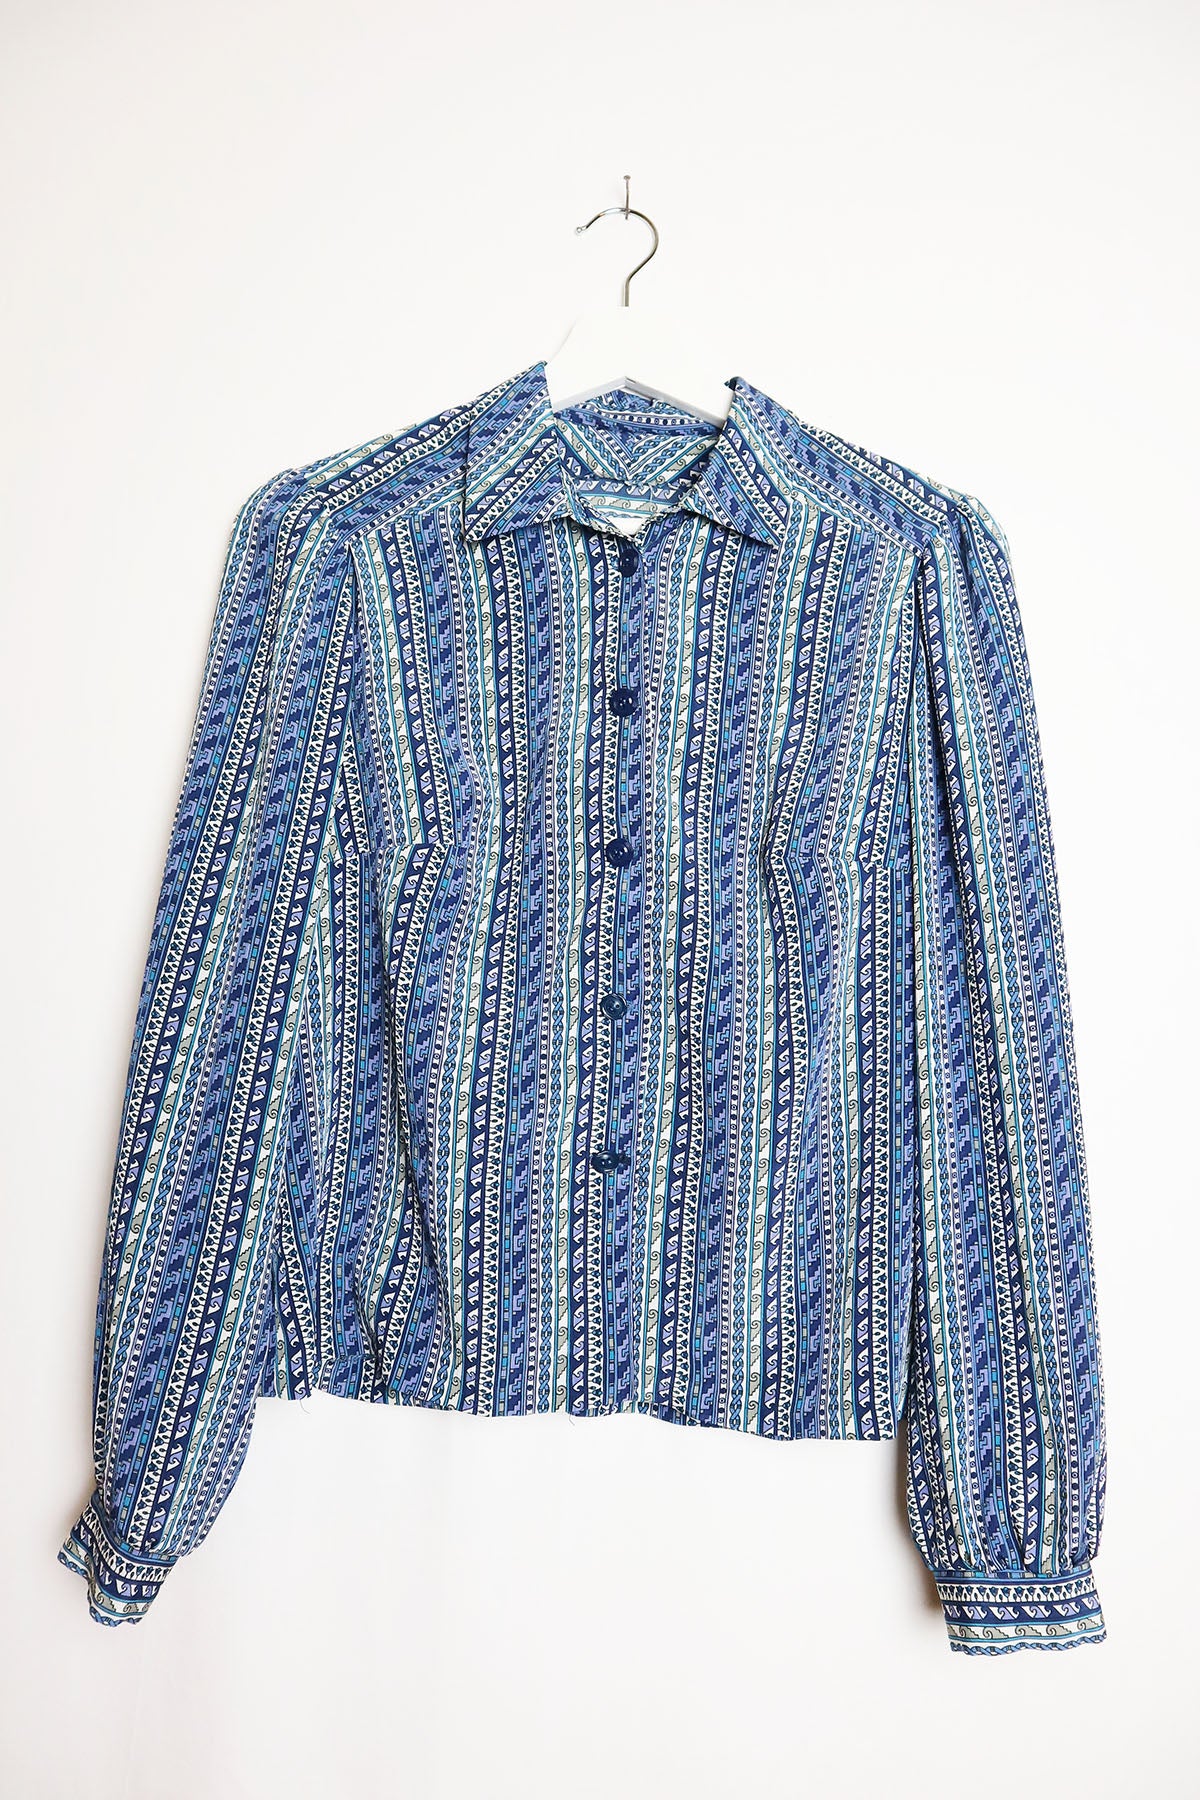 Handmade Bluse Vintage Ethno Streifen ( Gr. S )